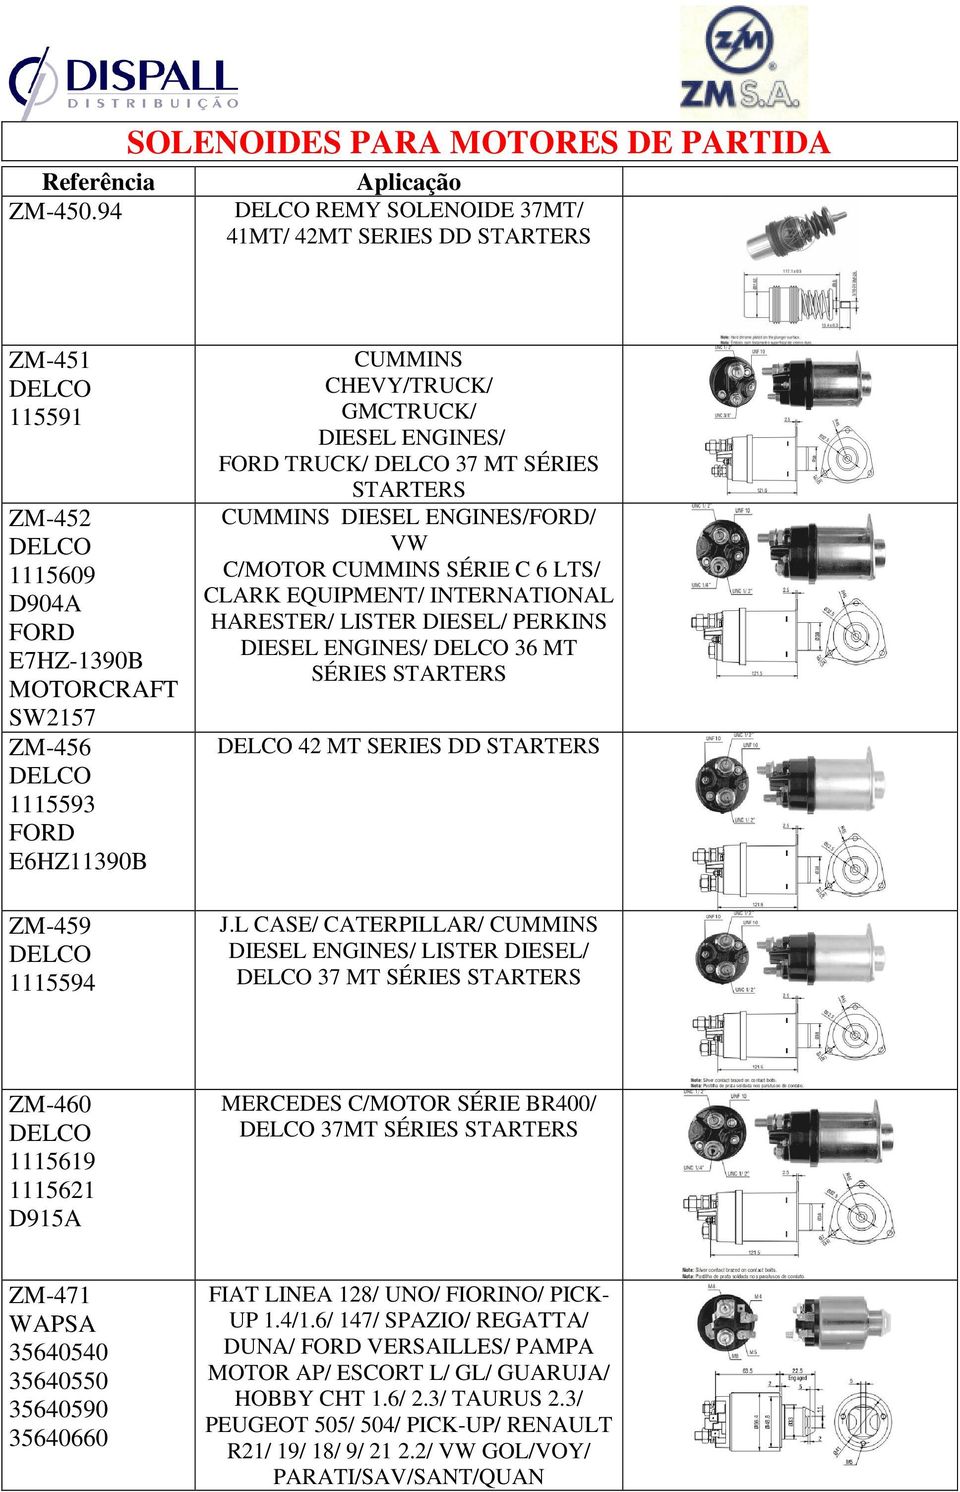 CUMMINS CHEVY/TRUCK/ GMCTRUCK/ DIESEL ENGINES/ FORD TRUCK/ DELCO 37 MT SÉRIES STARTERS CUMMINS DIESEL ENGINES/FORD/ VW C/MOTOR CUMMINS SÉRIE C 6 LTS/ CLARK EQUIPMENT/ INTERNATIONAL HARESTER/ LISTER